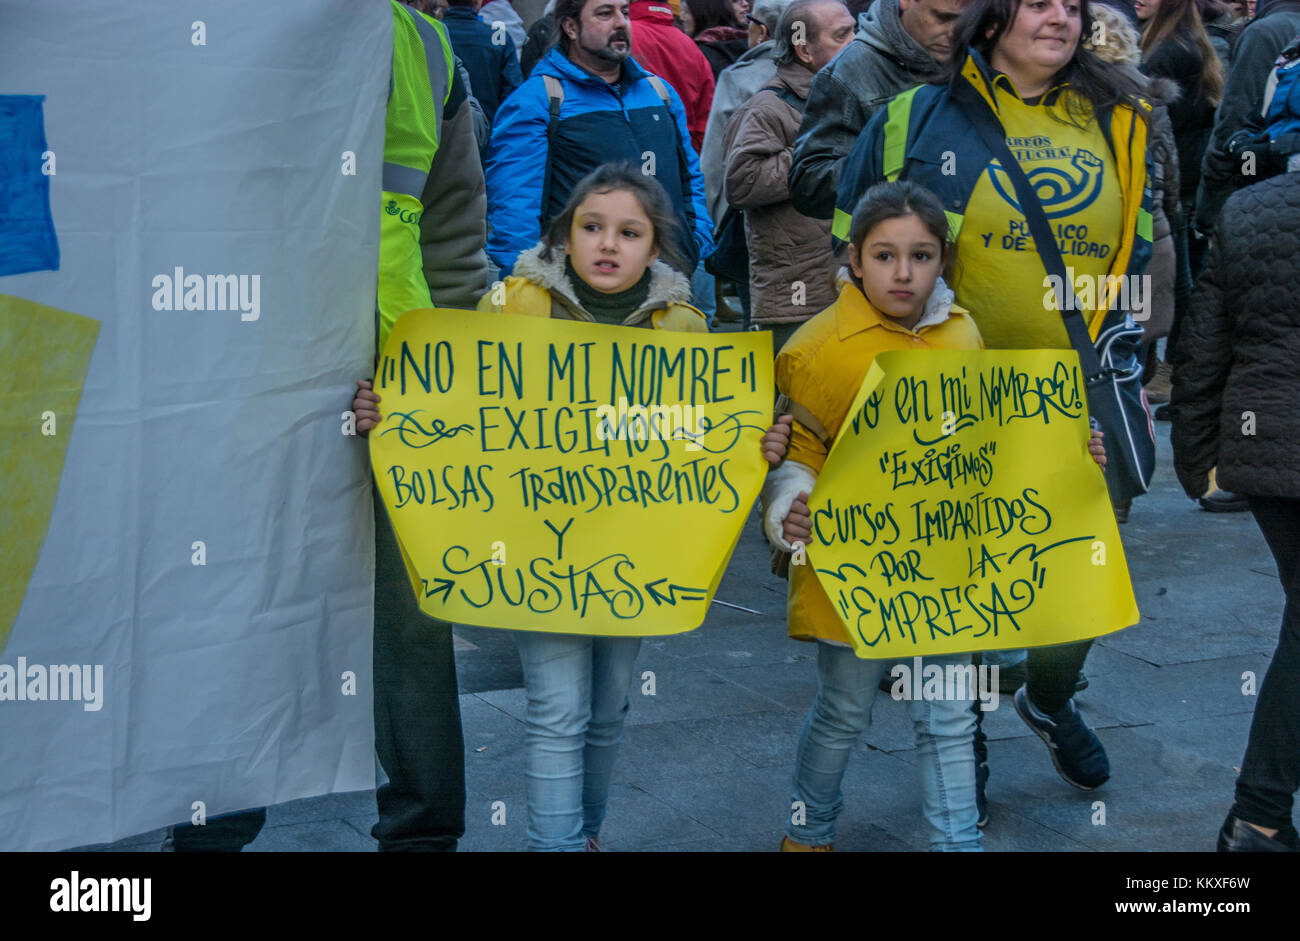 Madrid, Spanien. 2. Dez, 2017. Post Arbeitnehmer demonstriert gegen Müll Verträge in Madrid Spanien Quelle: Alberto Sibaja Ramírez/Alamy leben Nachrichten Stockfoto